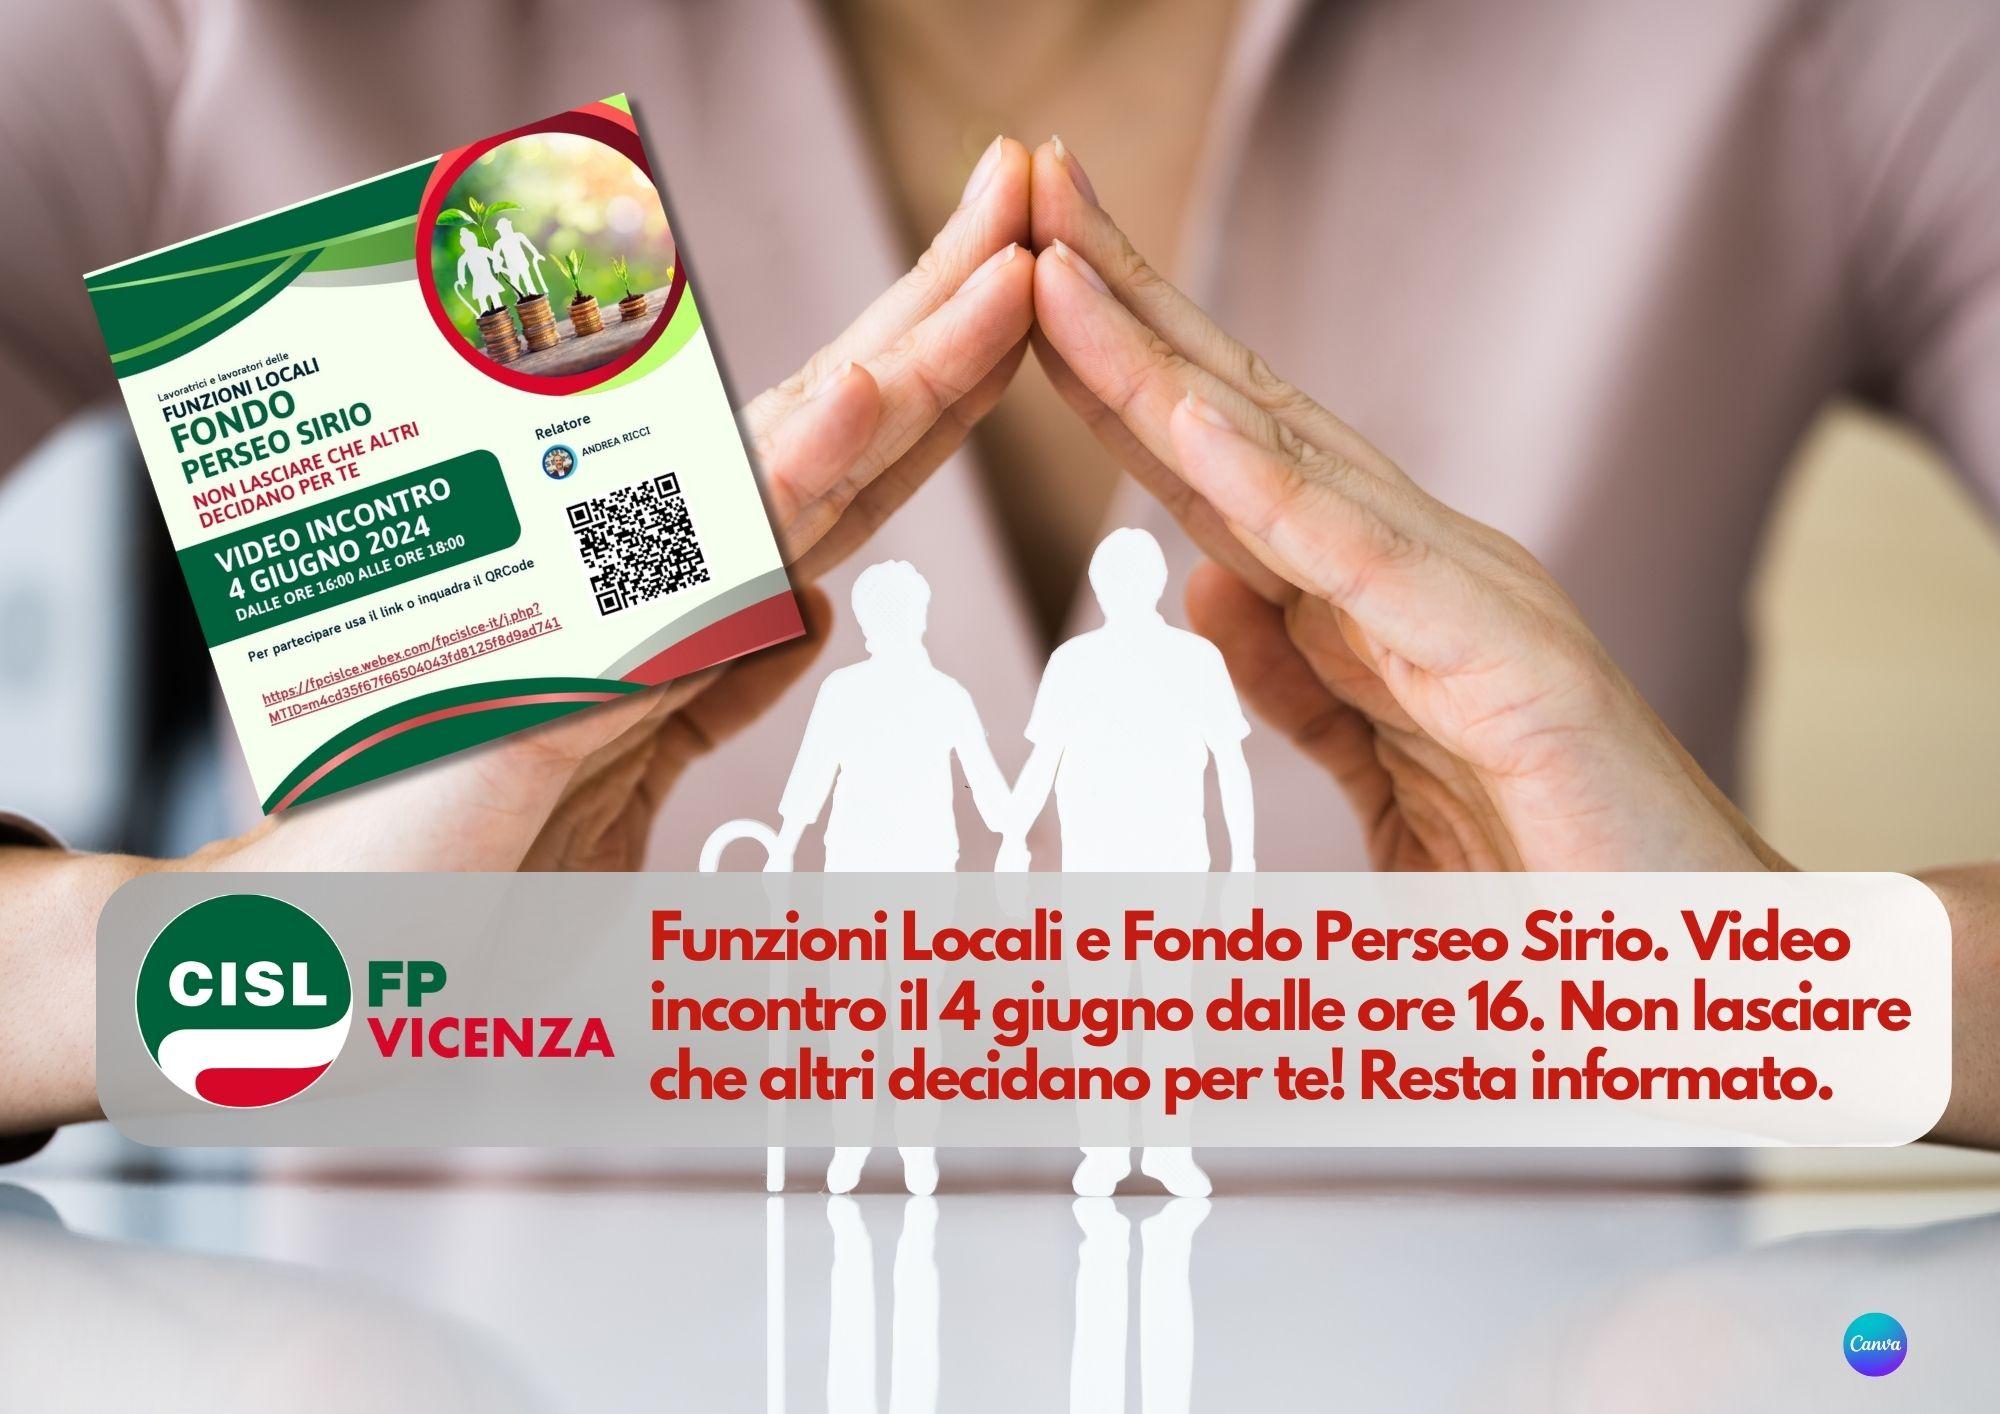 CISL FP Vicenza. Funzioni Locali e Fondo Perseo Sirio. Video incontro il 4 giugno dalle ore 16